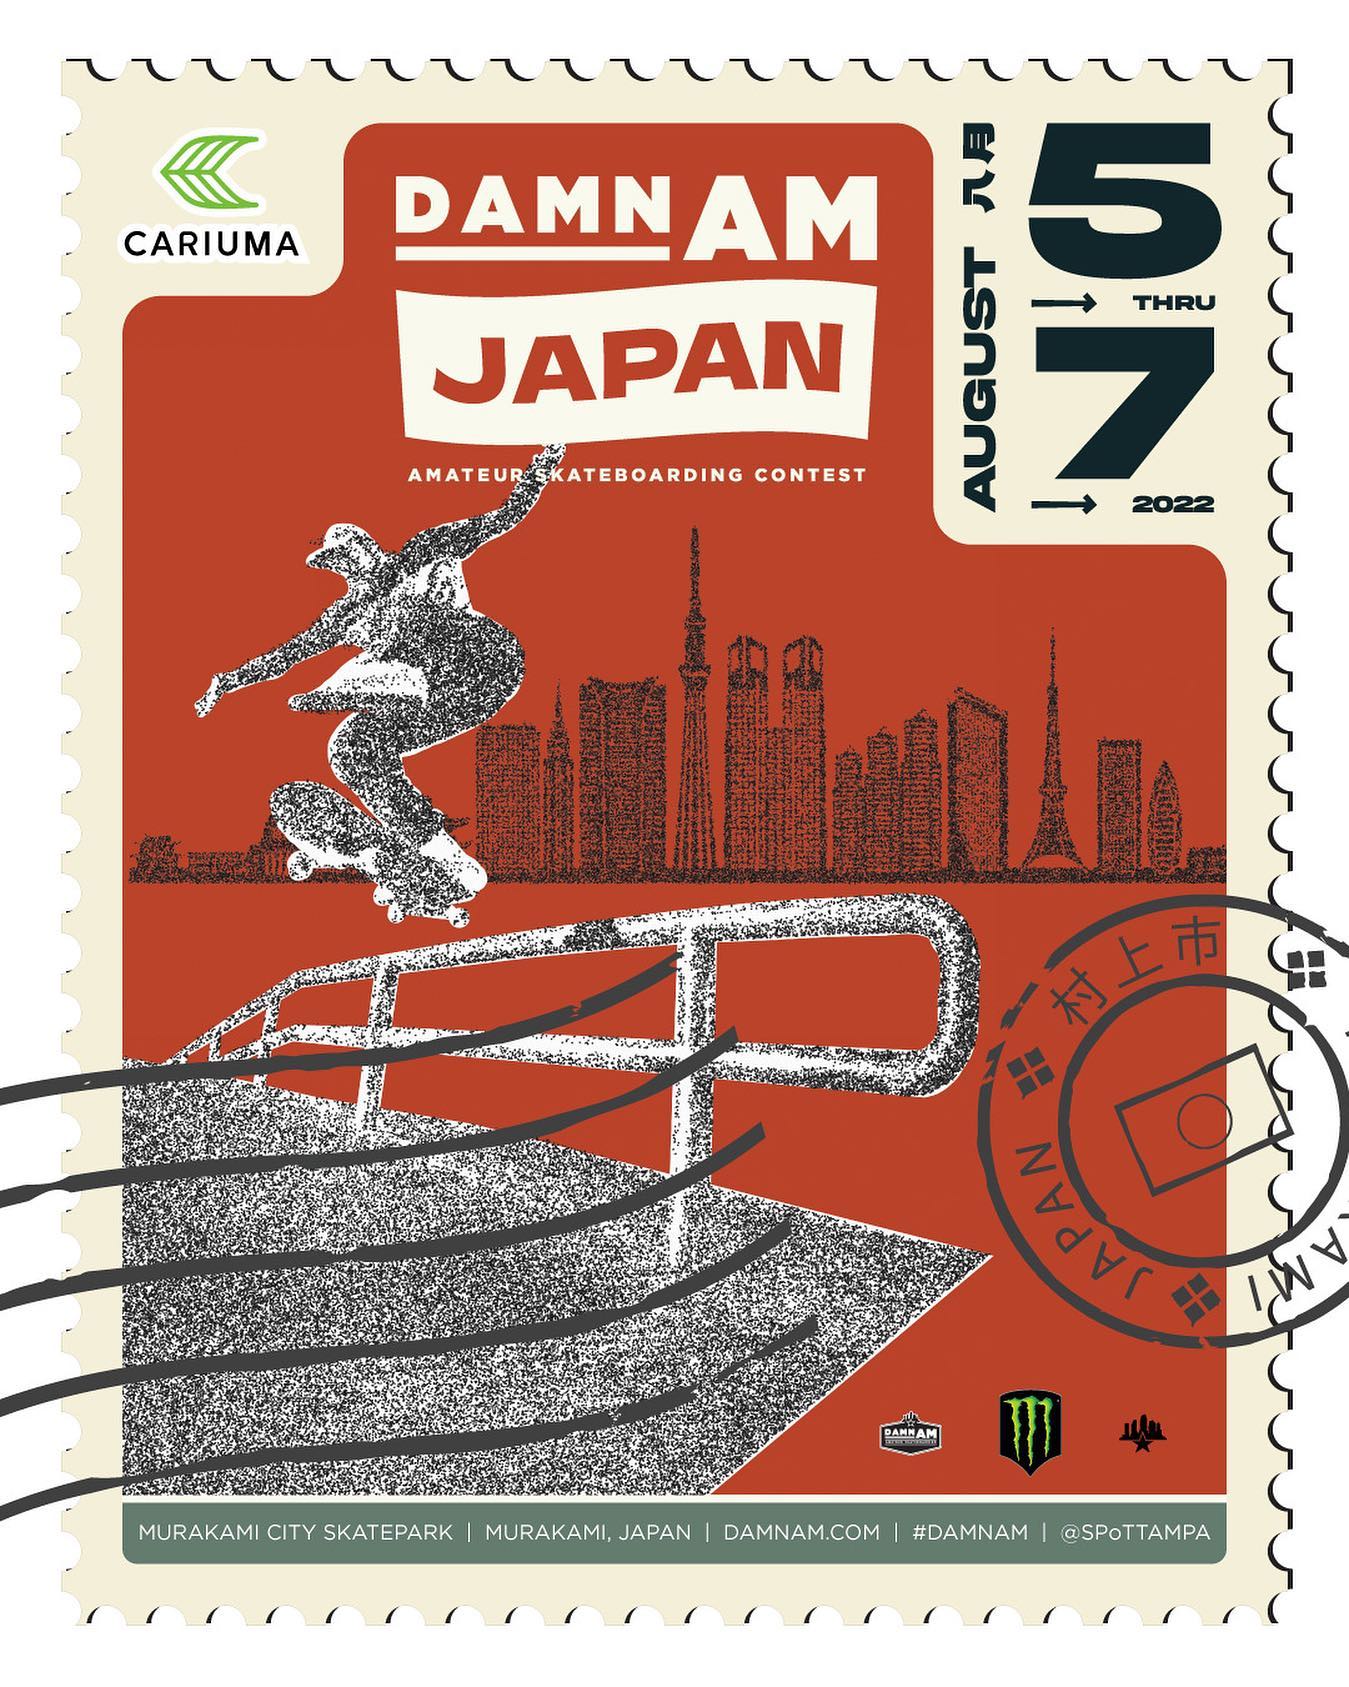 『2022 DAMN AM Japan presented by Cariuma』 が2022.8.5〜8.7の3日間村上市スケートパークにて開催！スケートボードの世界最高峰コンテスト『SLS』への登竜門となる『TAMPA AM』の出場権をGETできる日本開催の貴重な機会となっていますエントリー方法などブログにUPしましたので気になるスケーターはチェックして、がんがんエントリーしちゃいましょう！#SPoTTampa#DamnAm